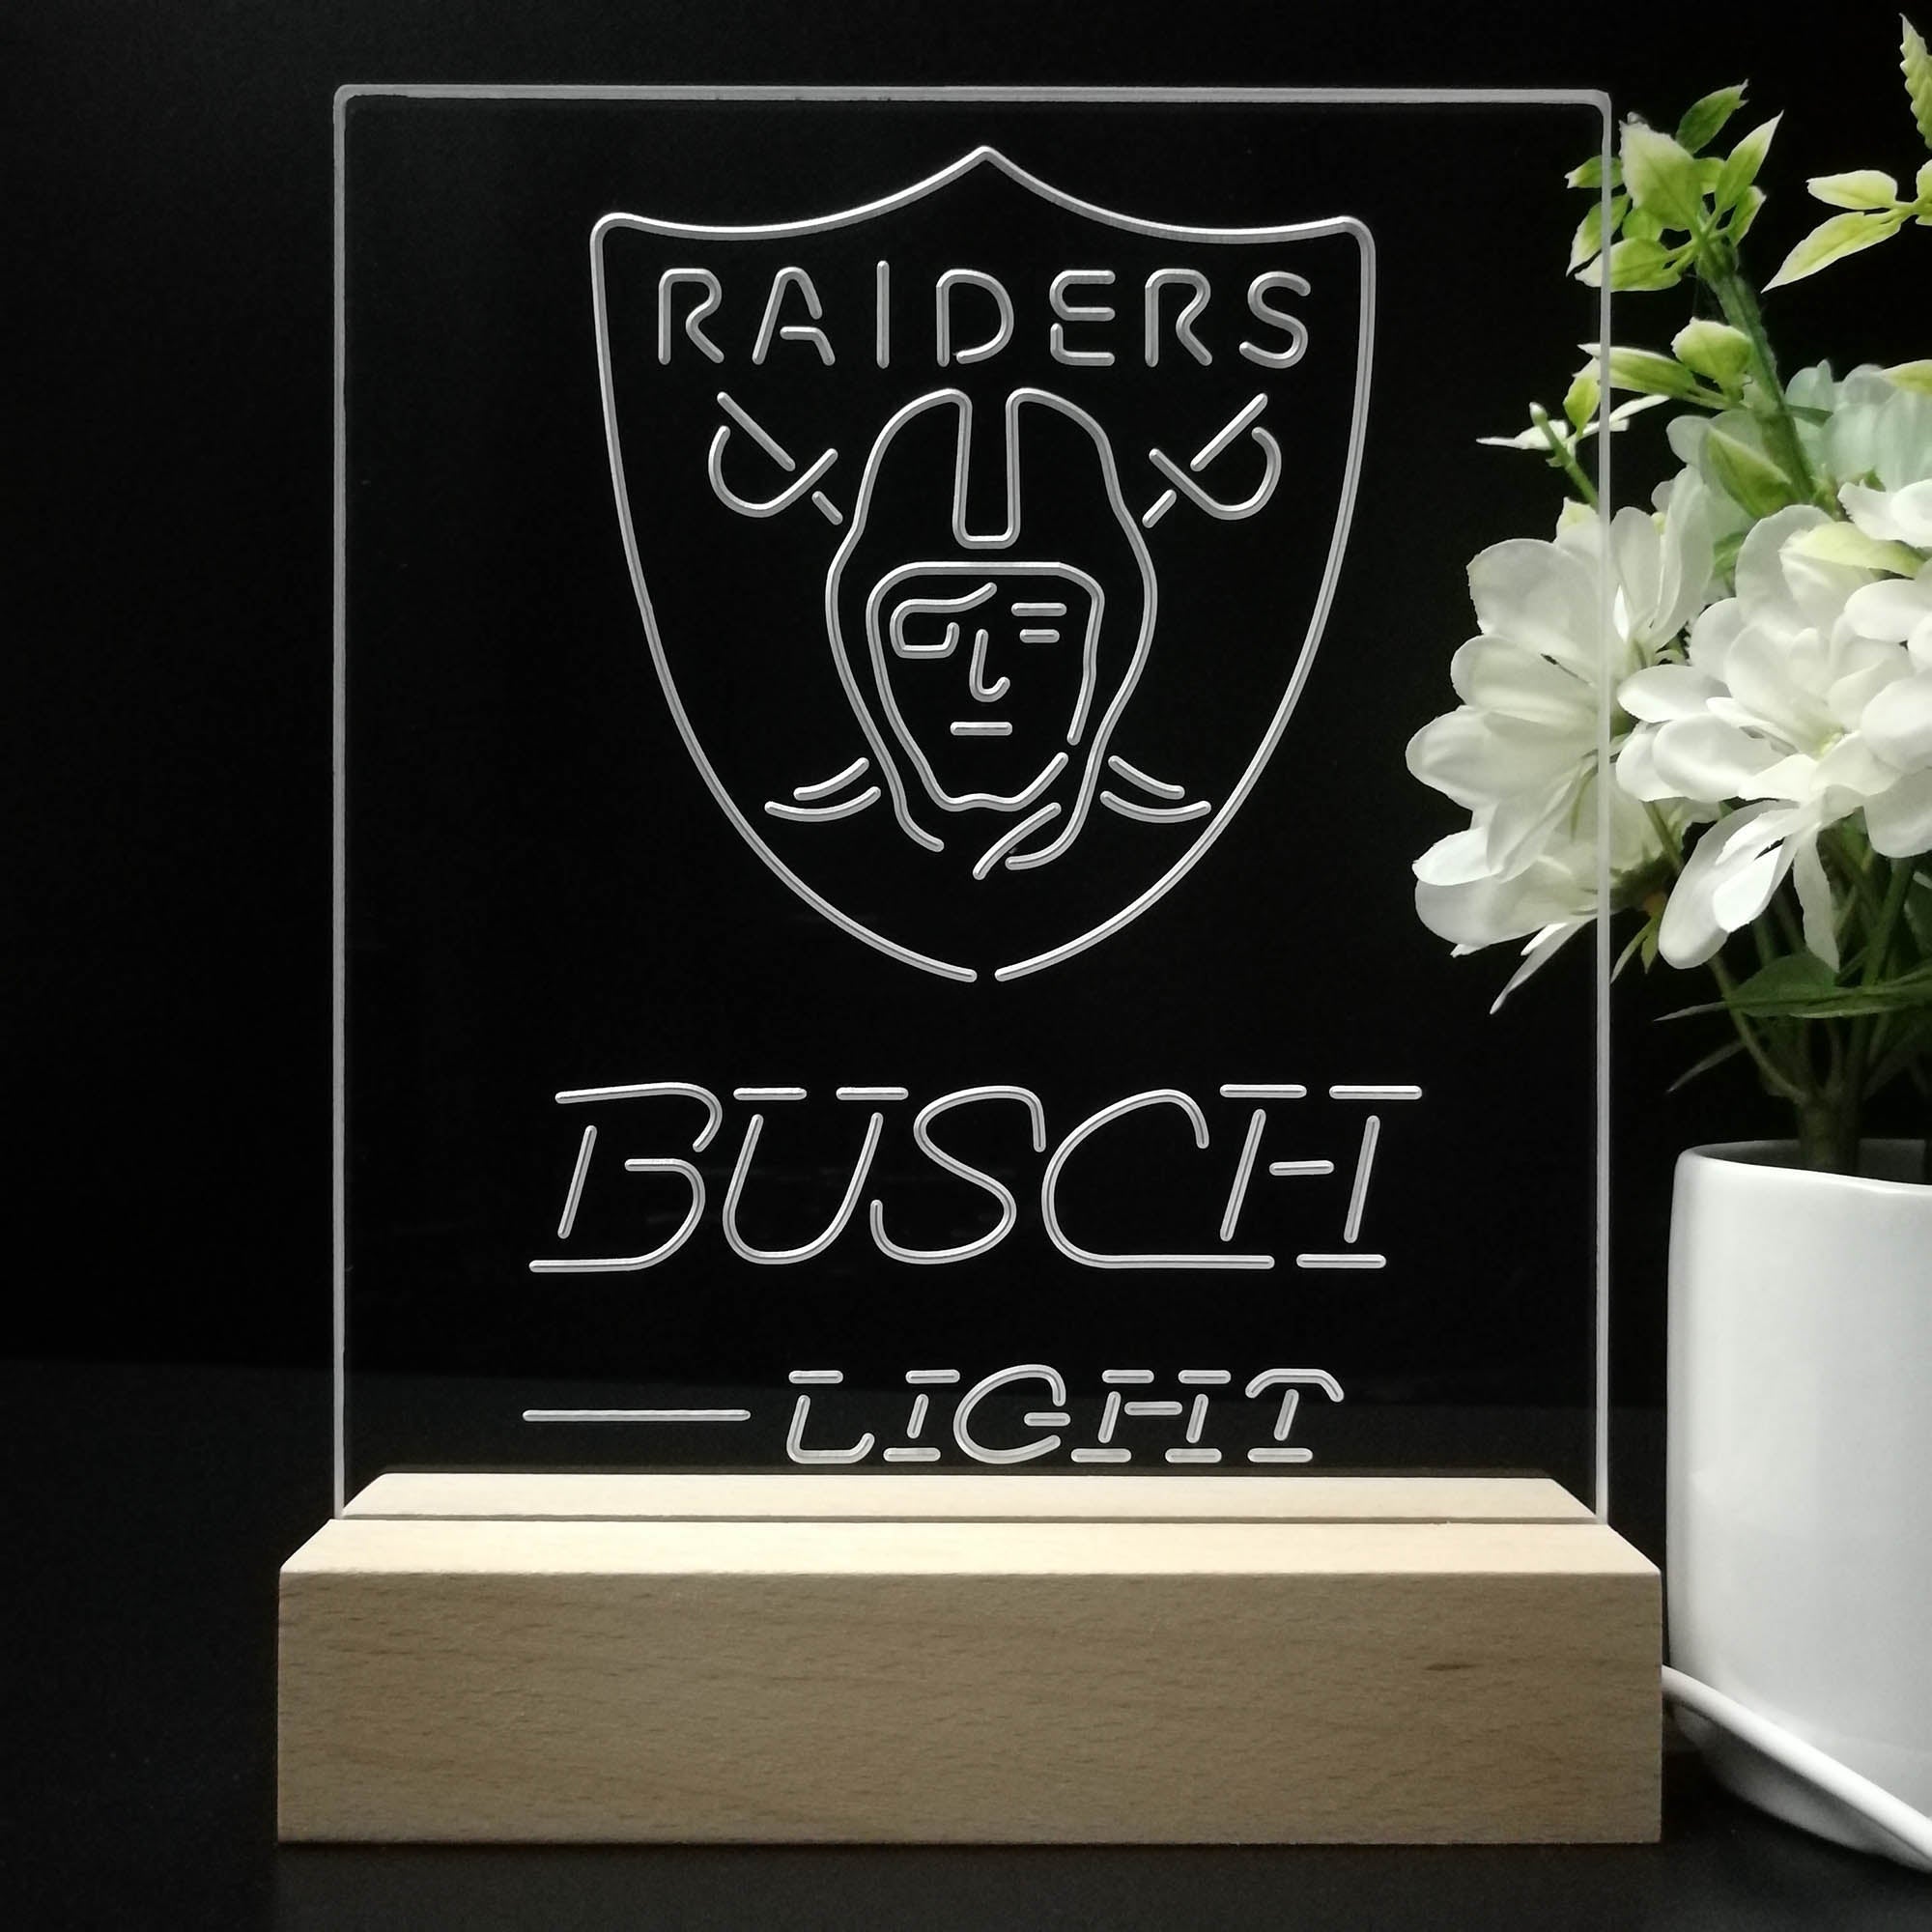 Oakland Raiders Busch Light Neon Sign Pub Bar Lamp